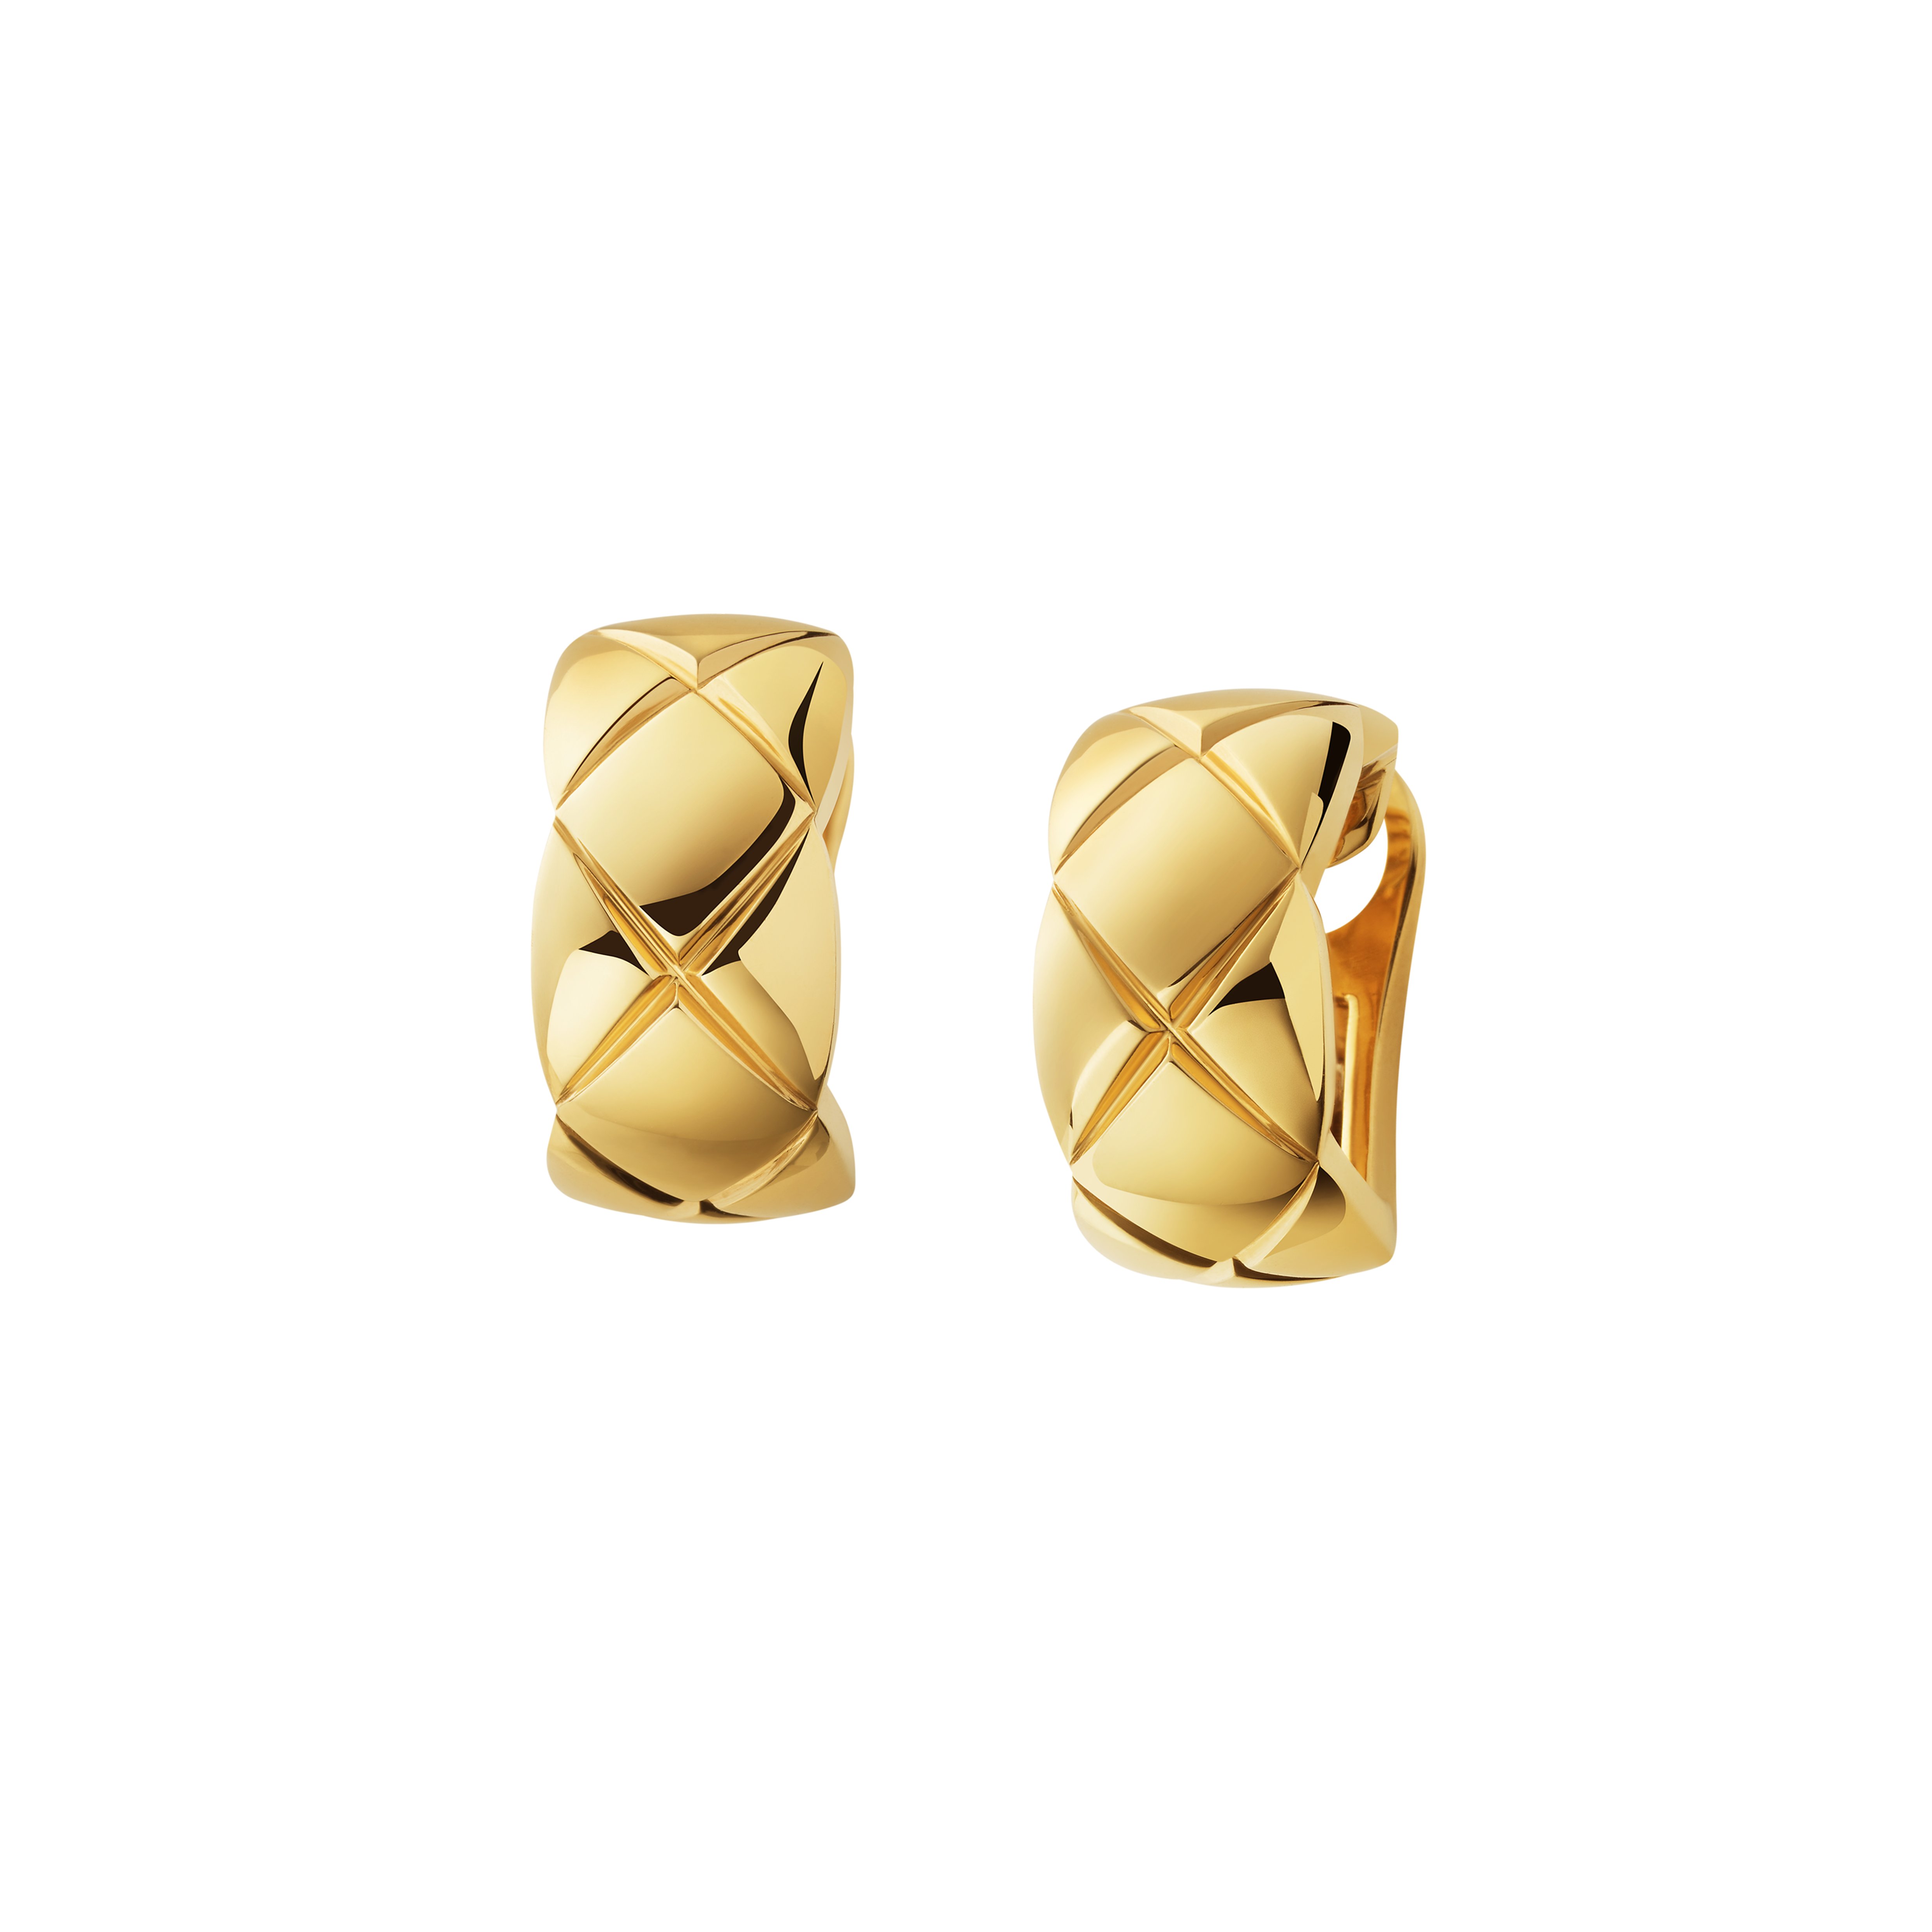 這款18K黃金Coco Crush耳環採用可拆式耳針設計，可佩戴於耳珠上；也可拆除